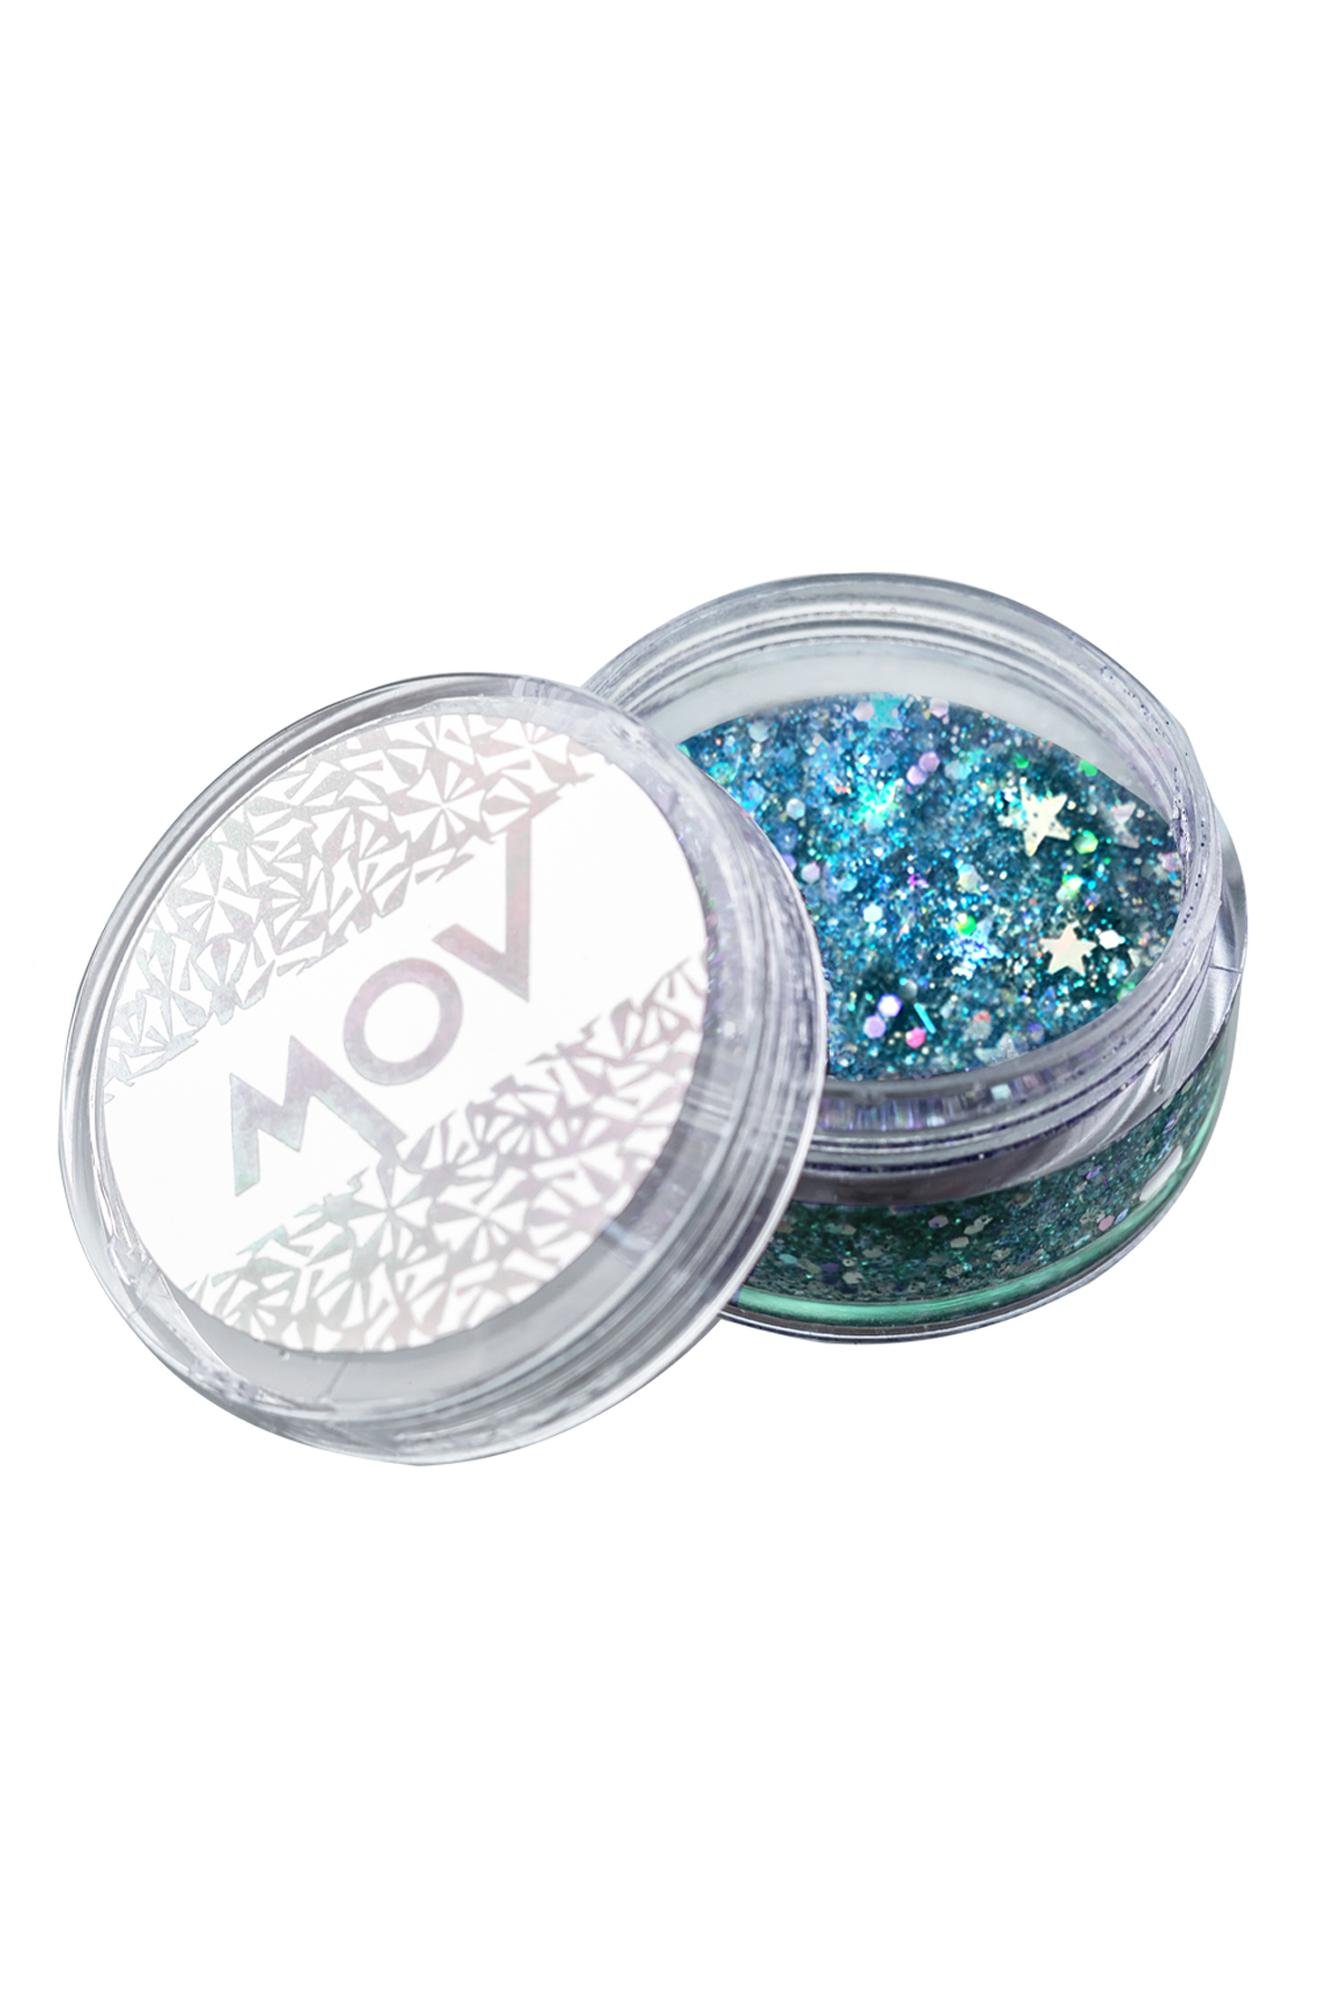  Mov Face - Body Glitter No 5 Mavi